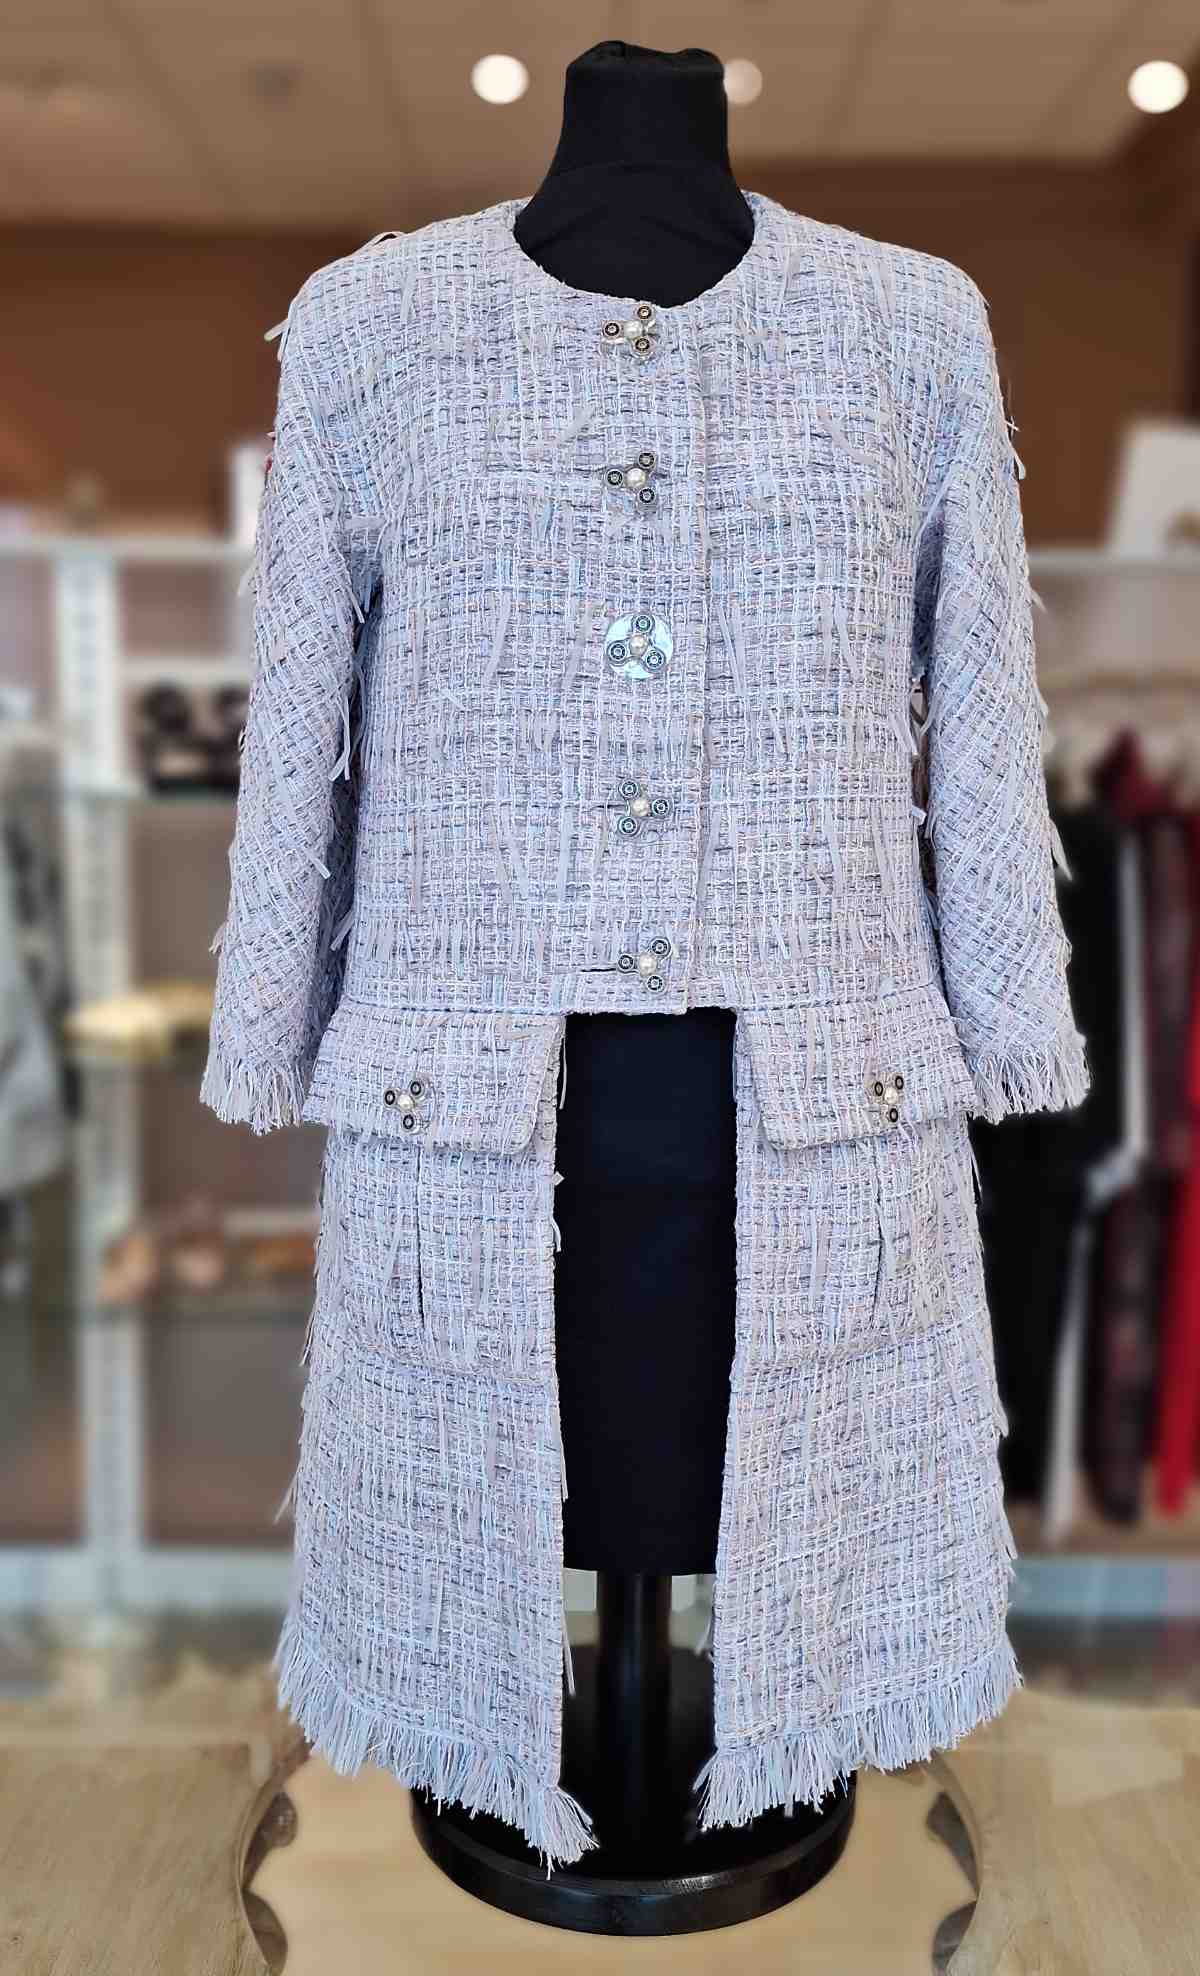 Chanel Gehrock, in flieder-blau, Größe 40, neuwertig, mit Fransen und großen Knöpfen, Frontalansicht.